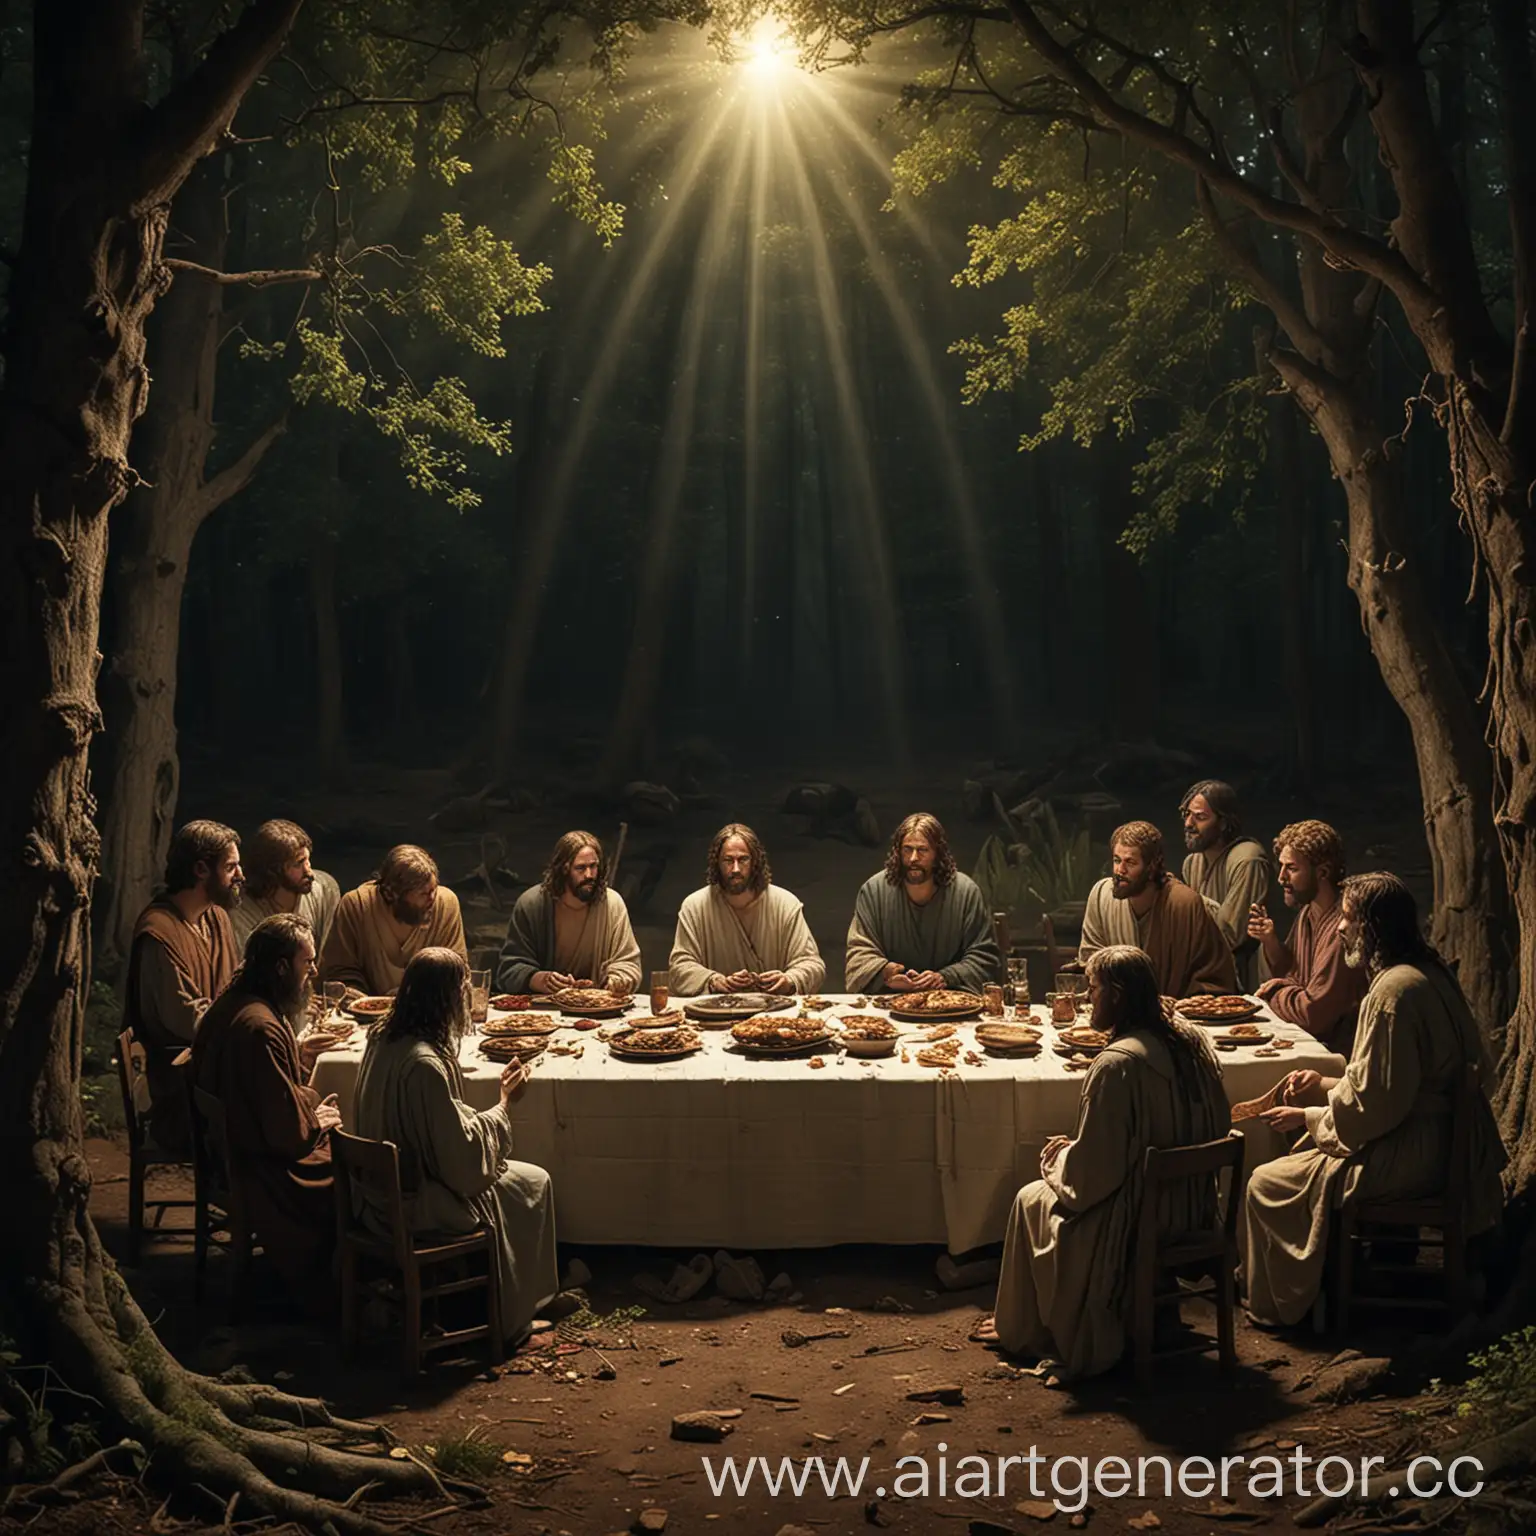 тайная вечере, но апостолы слепые и иисус сидит мертвый. в лесу темно